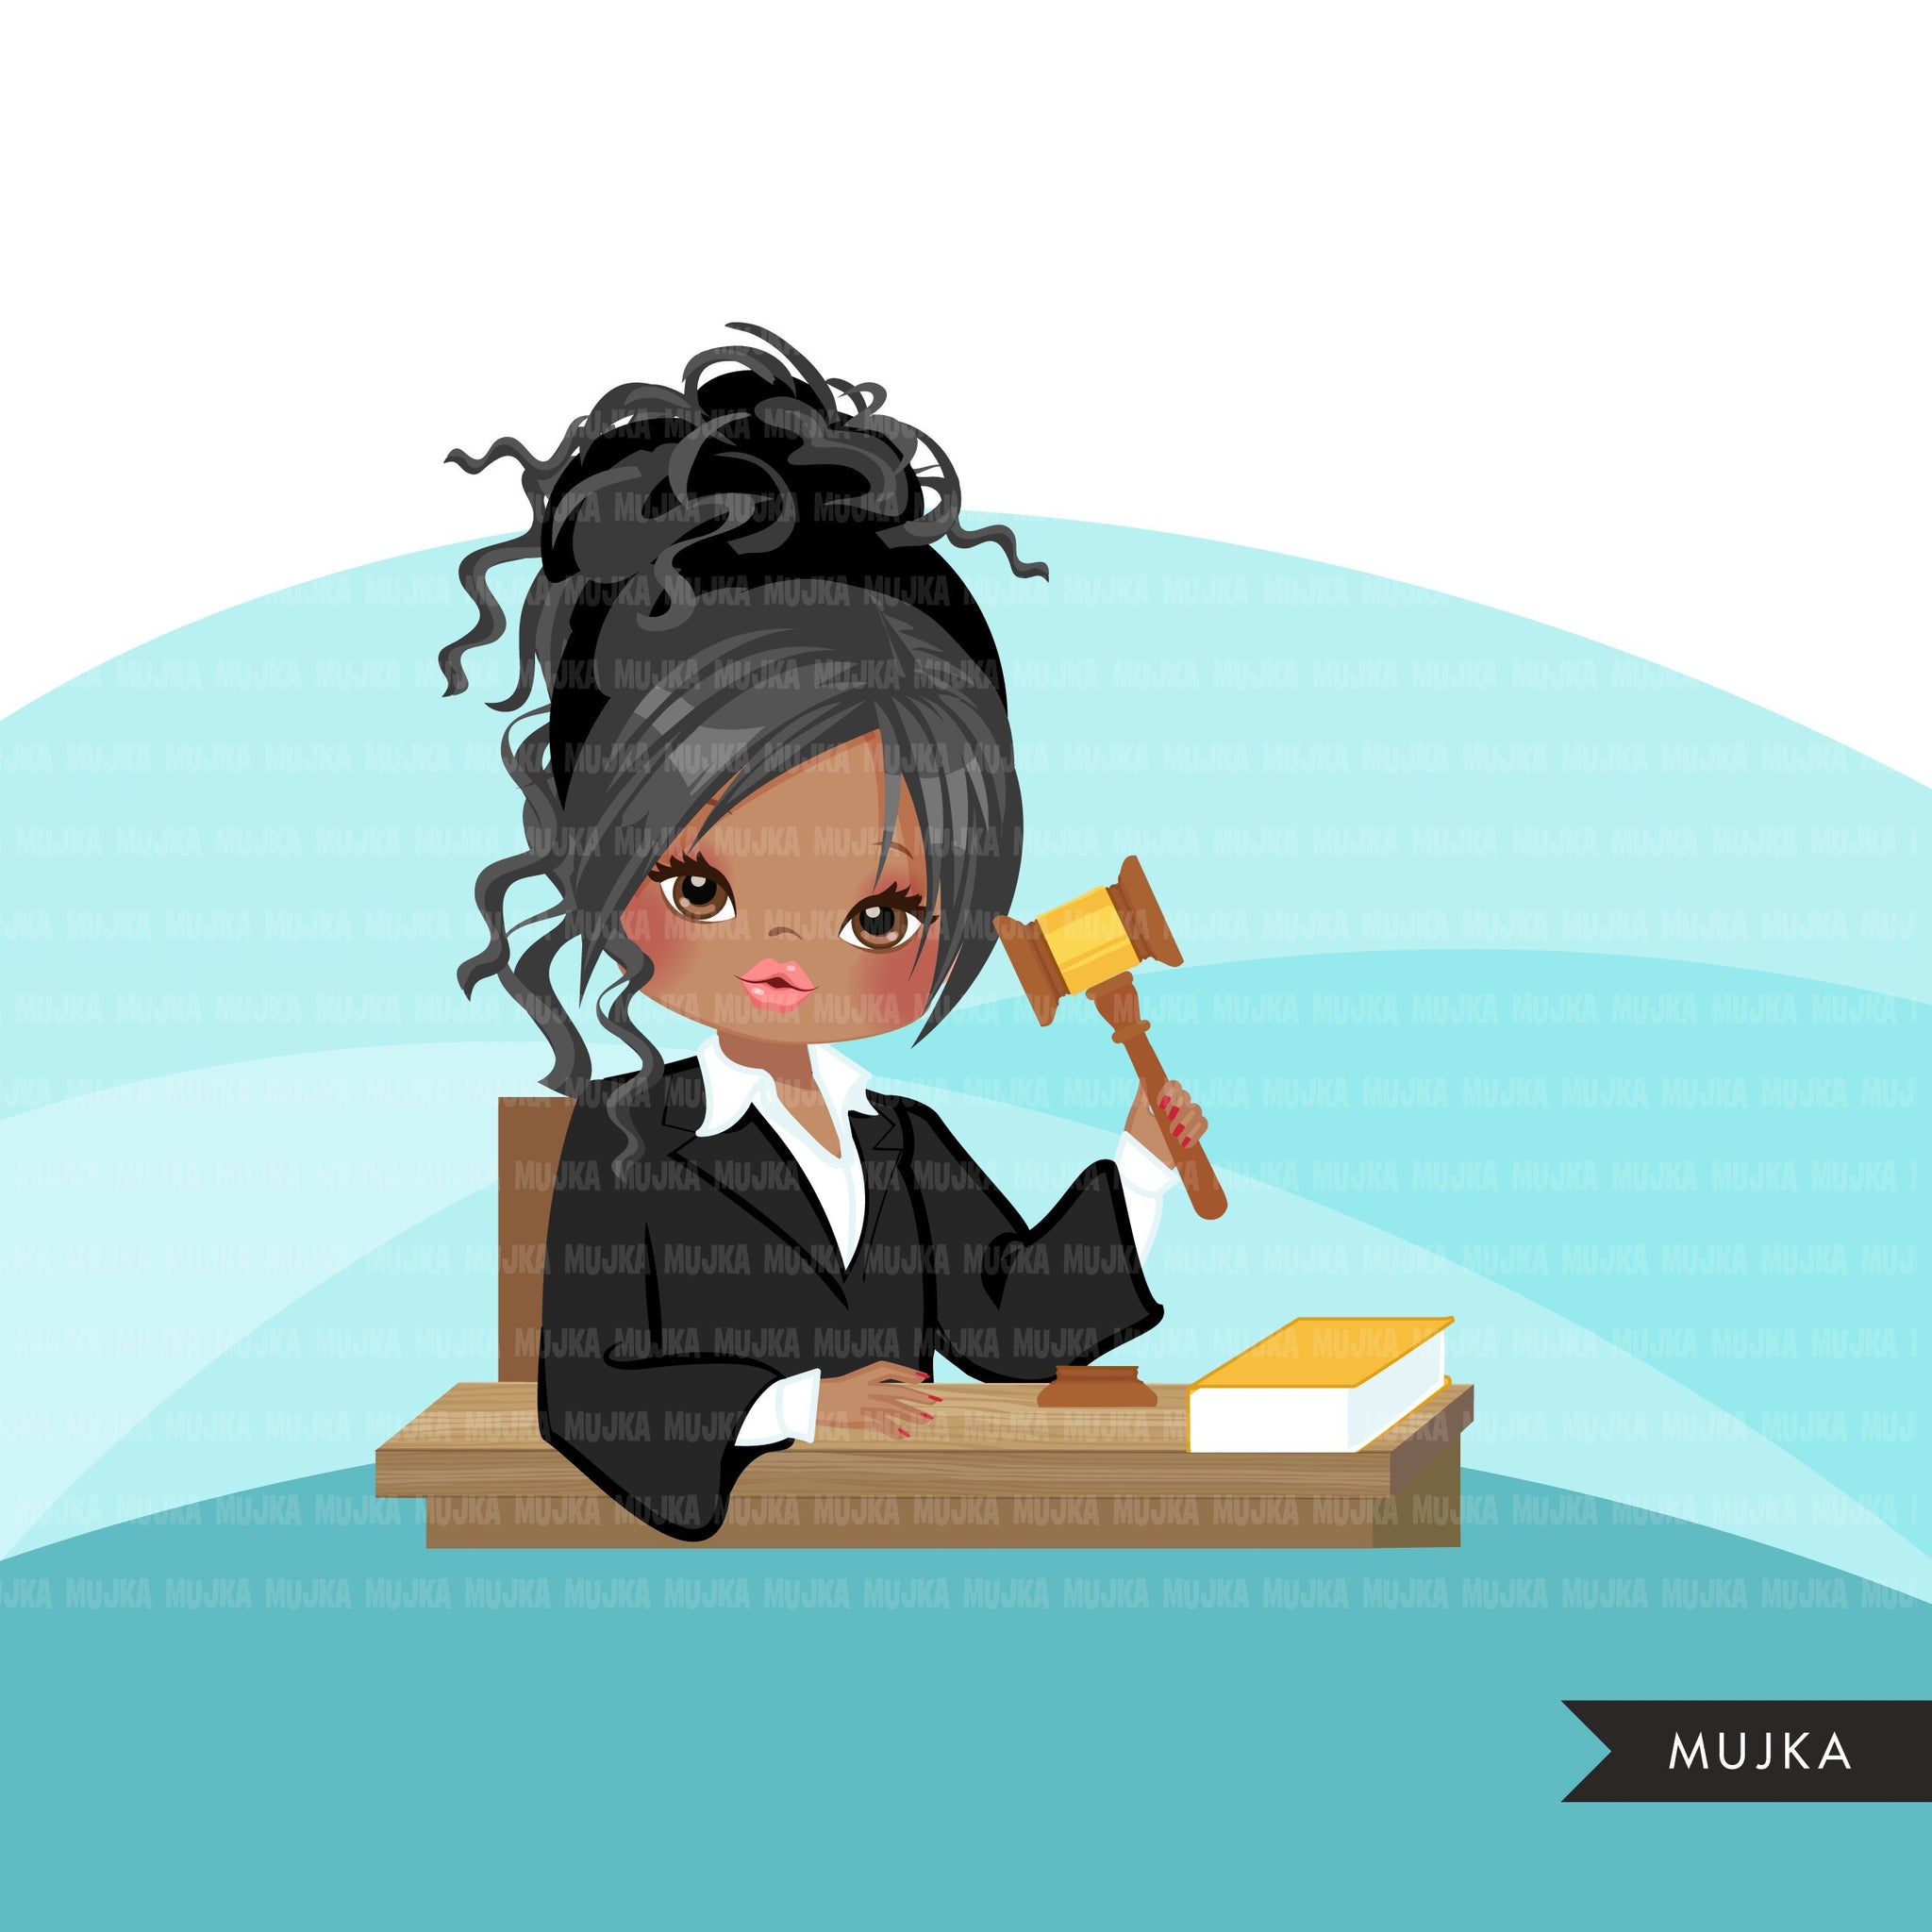 Mujer juez avatar clipart con mazo y libro de derecho, impresión y corte, clip art de la chica de la justicia, tribunal de justicia